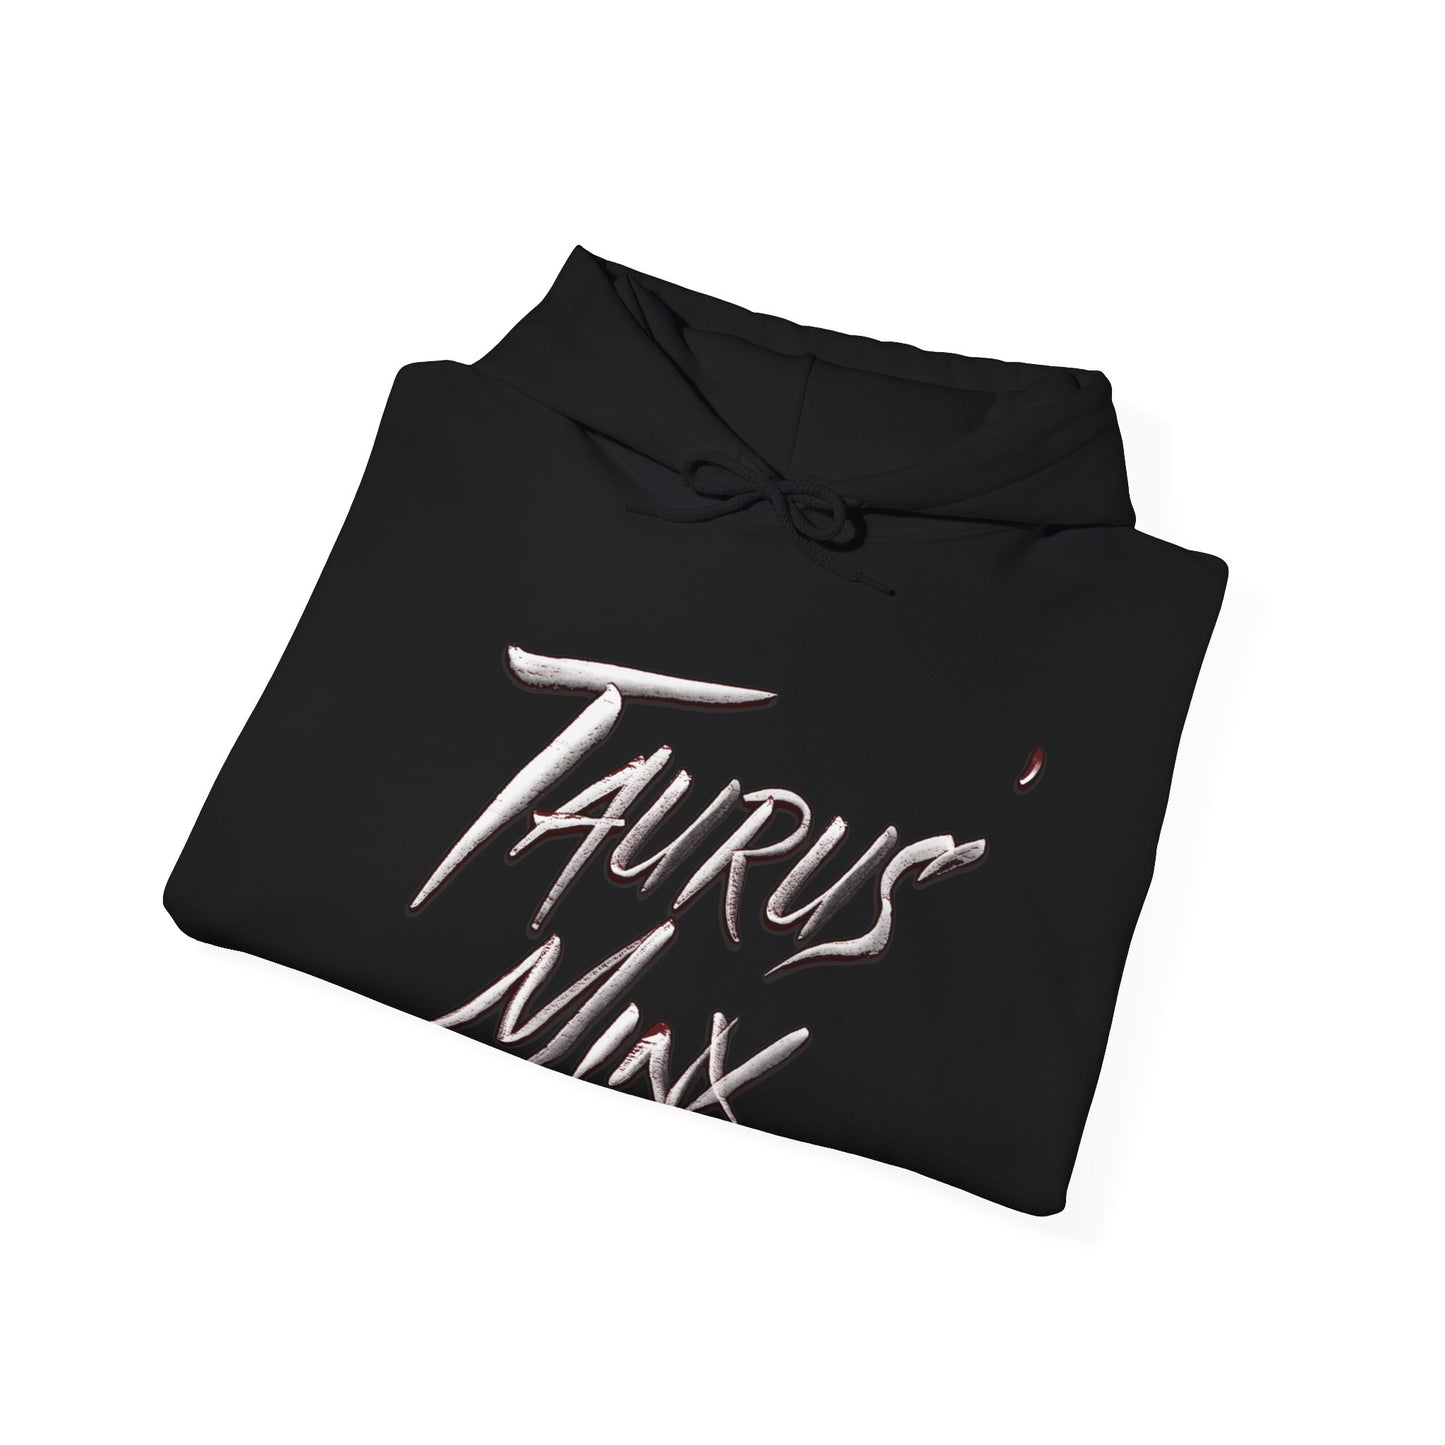 Taurus' Minx  Hooded Sweatshirt